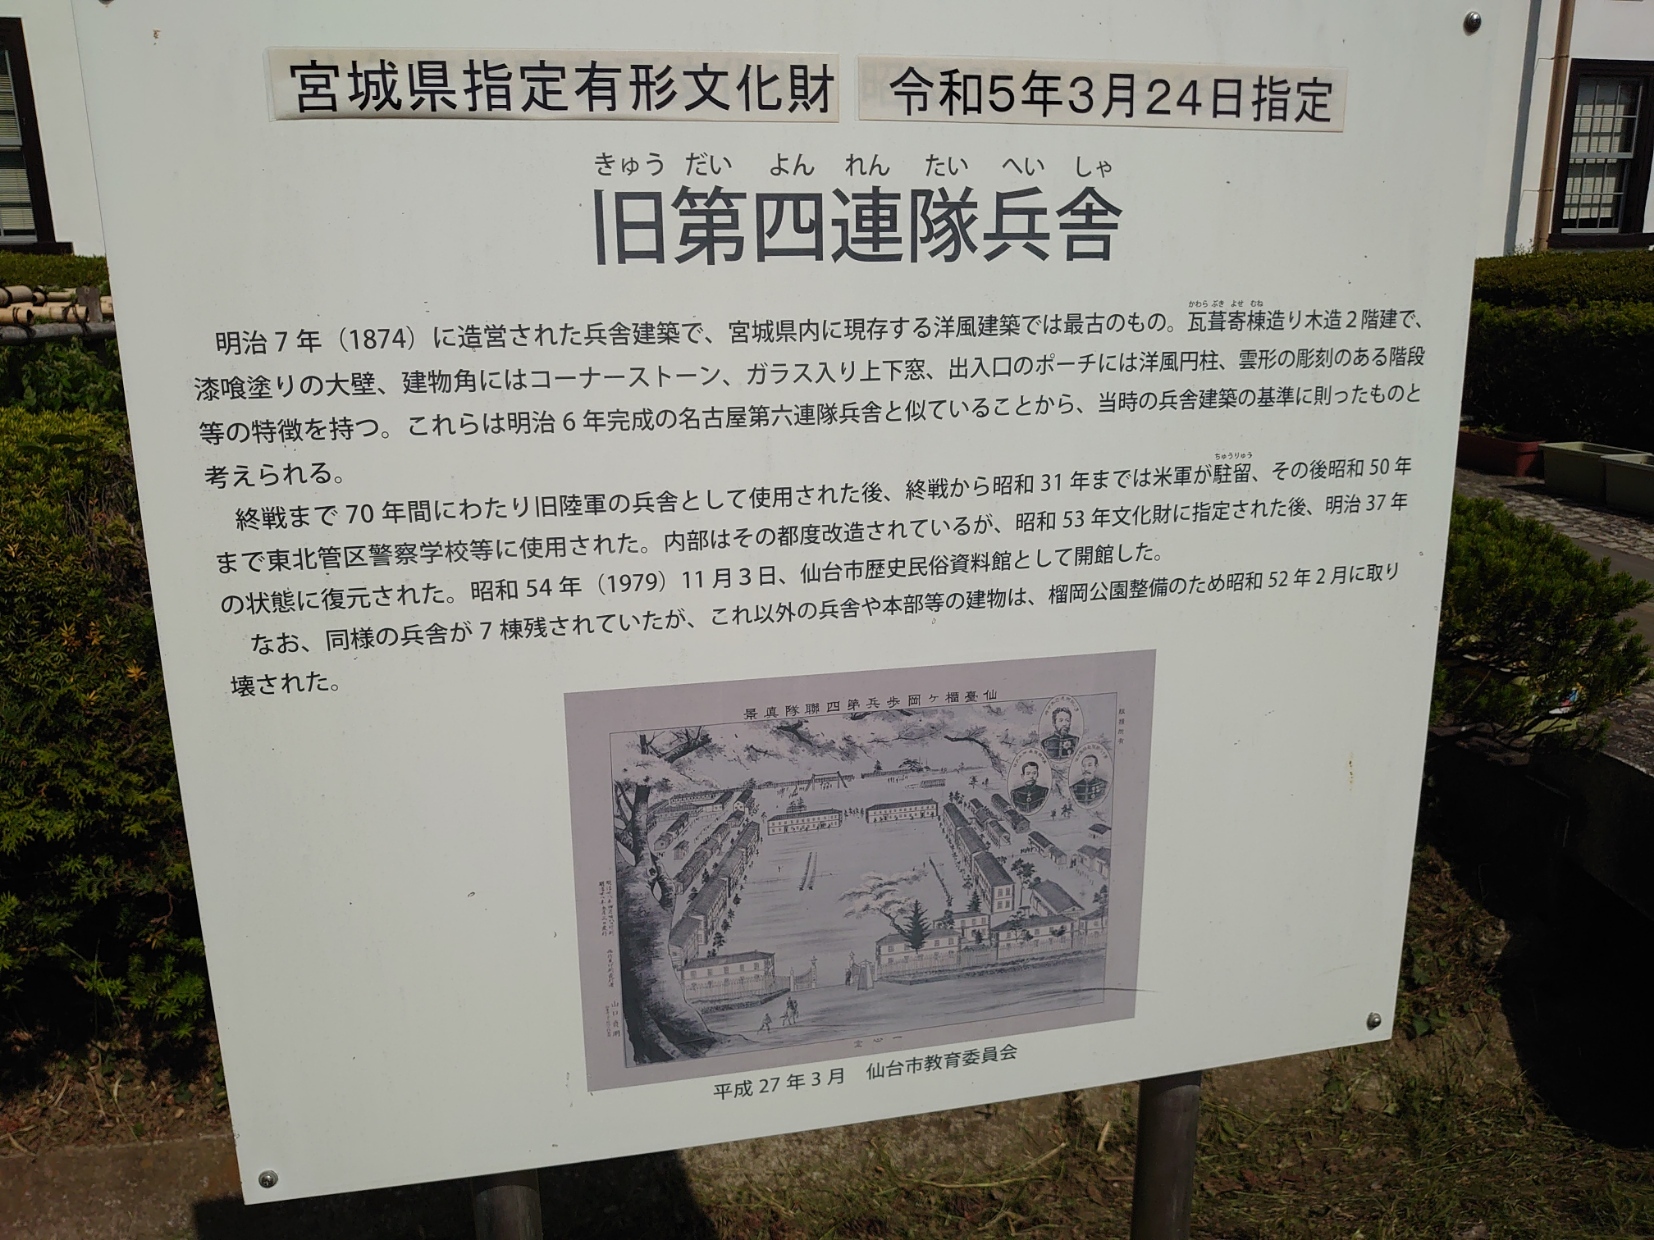 仙台市歴史民俗資料館建屋が宮城県指定有形文化財であることを示す看板